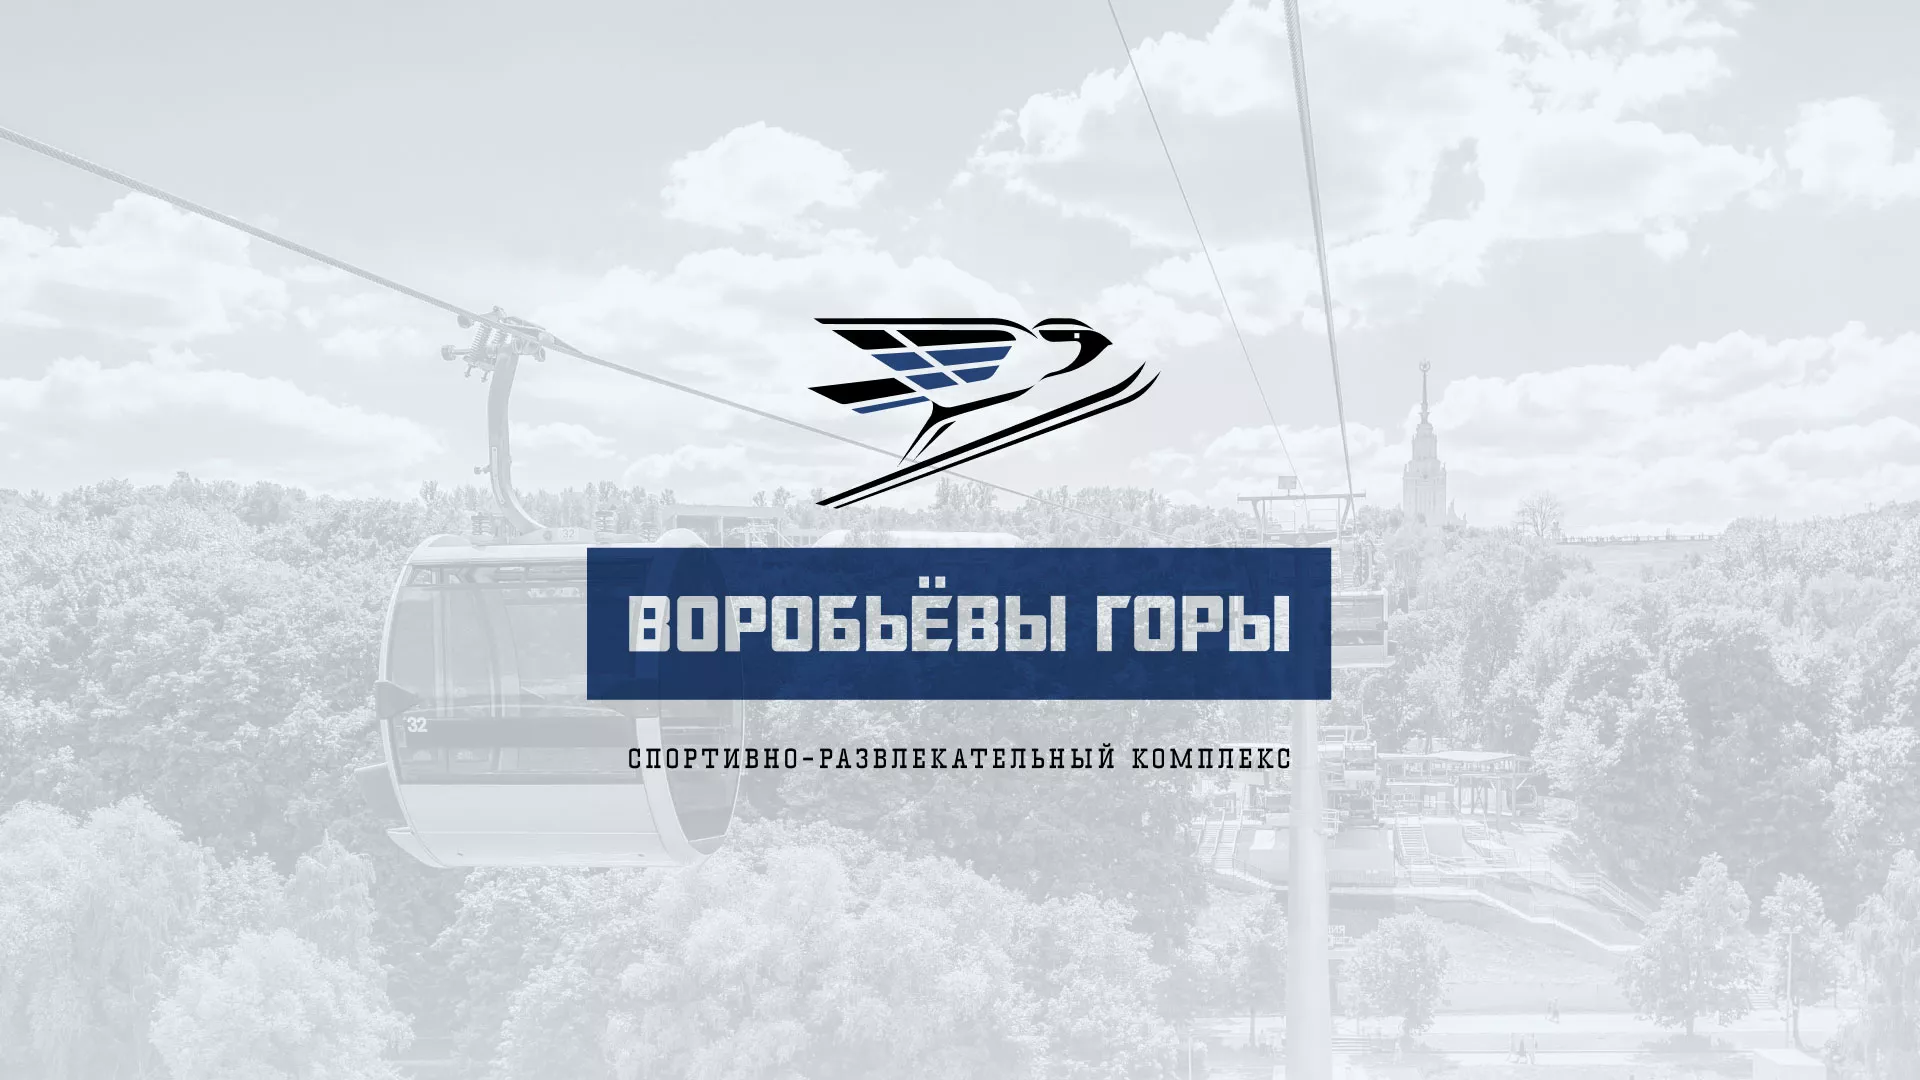 Разработка сайта в Москве для спортивно-развлекательного комплекса «Воробьёвы горы»